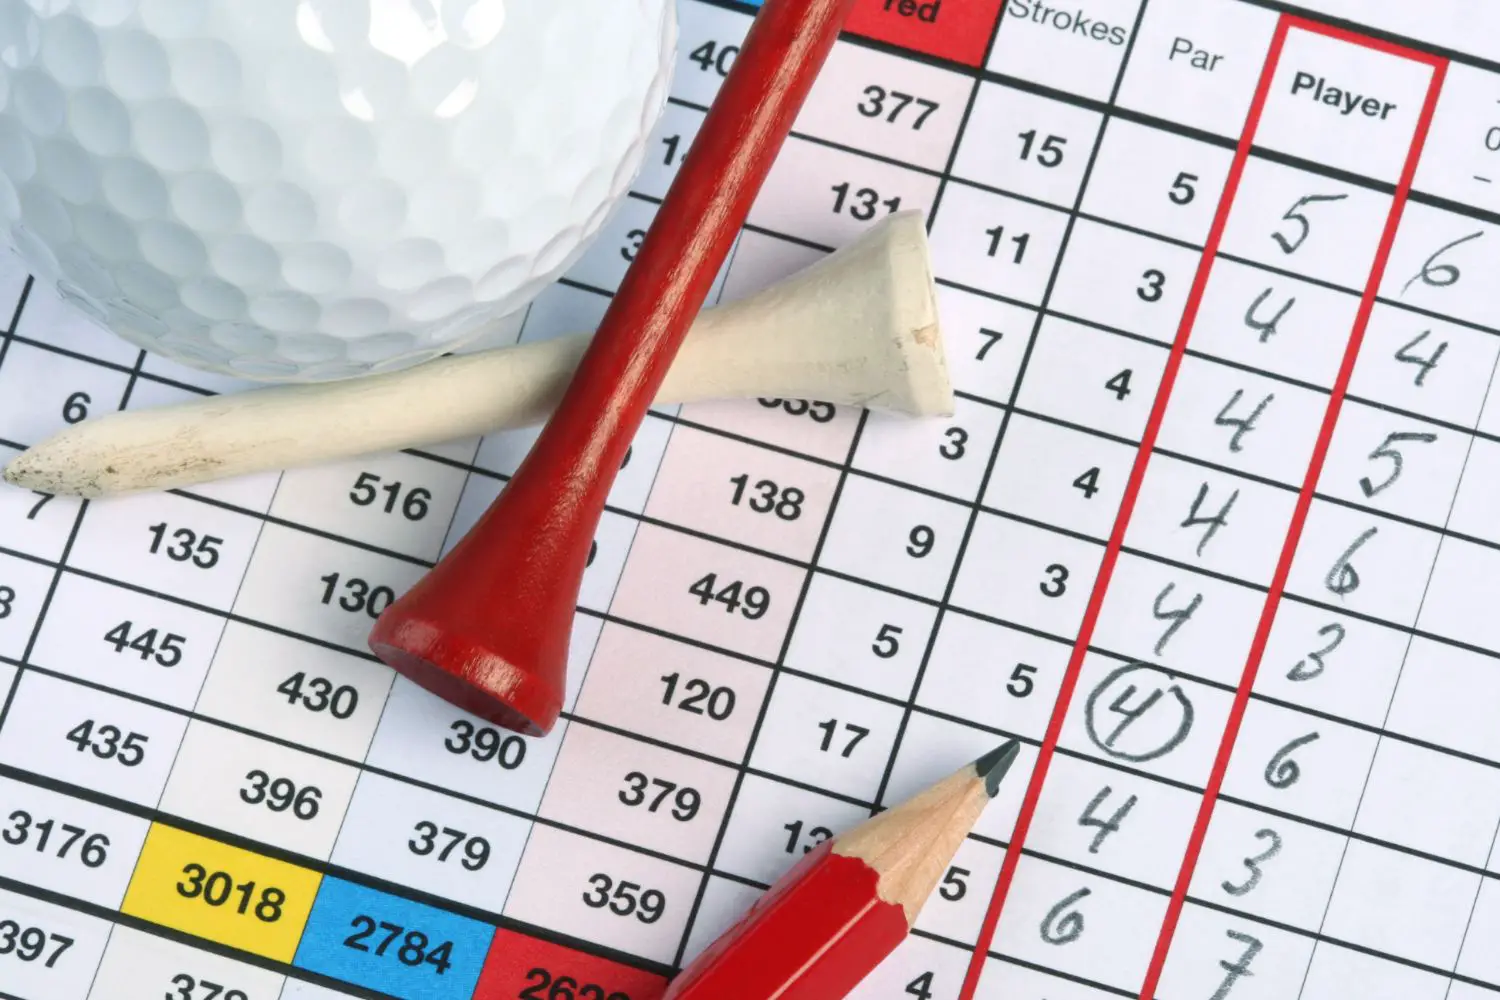 golfer score card